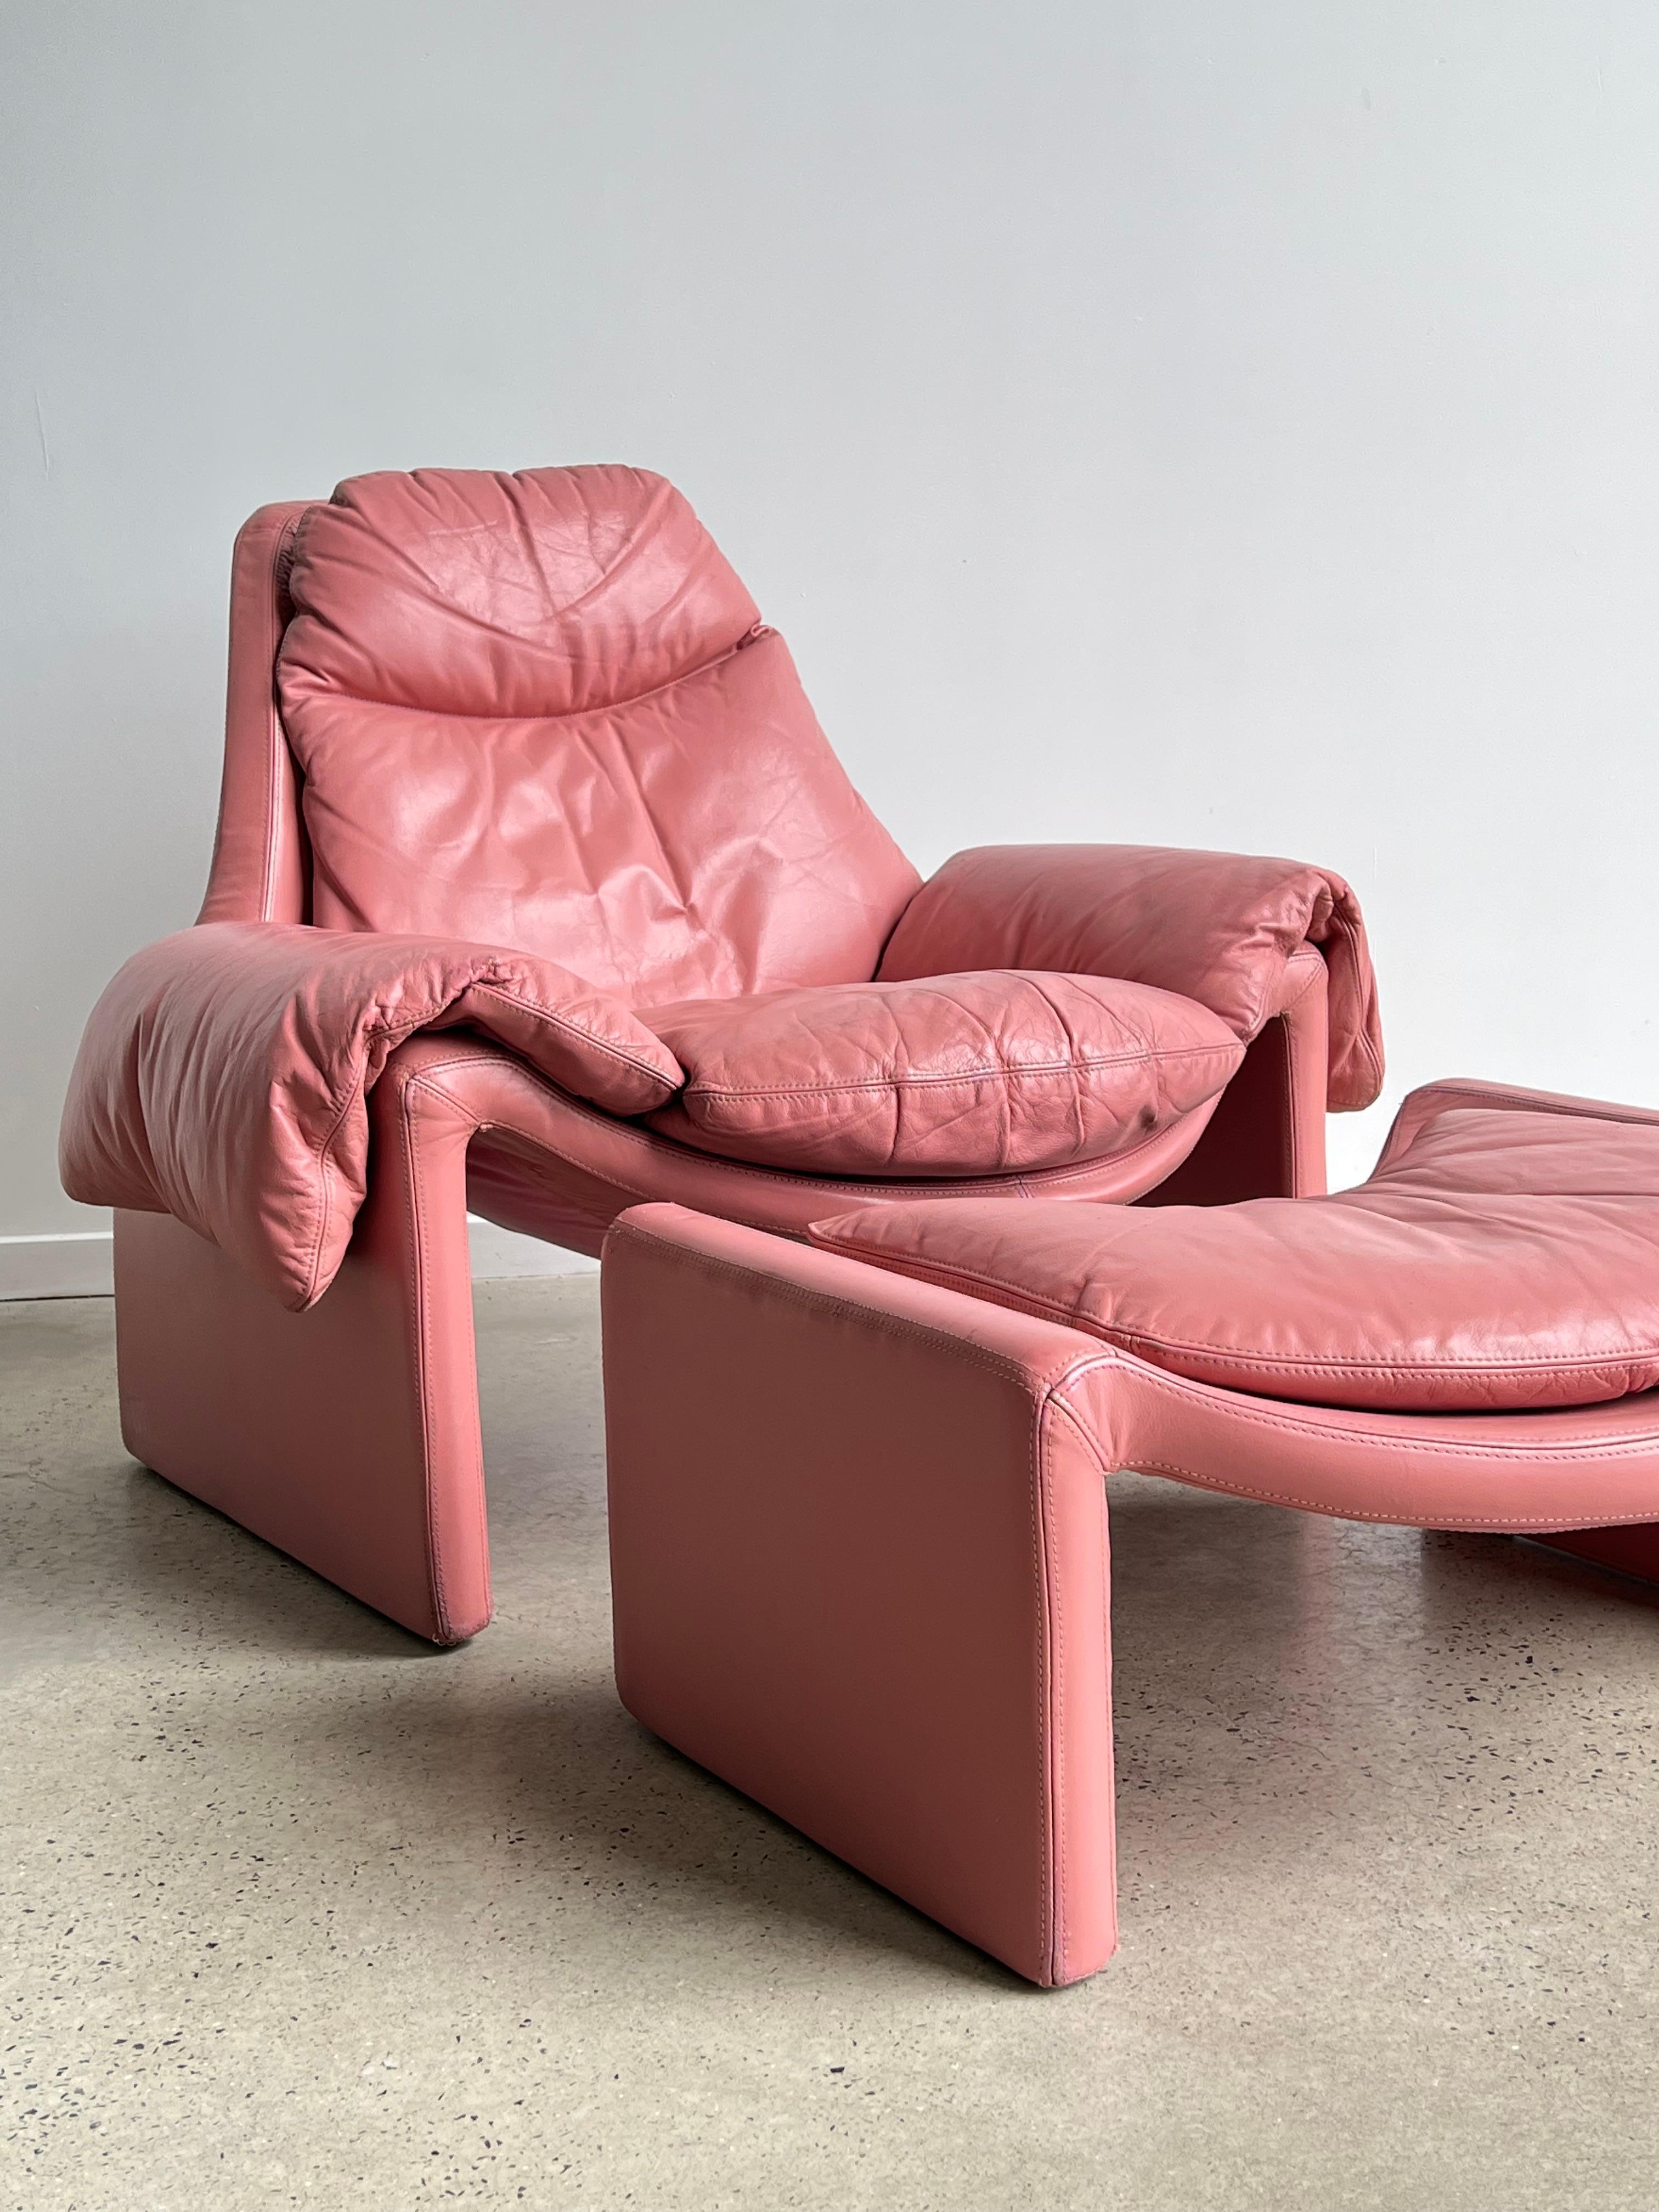 Ce modèle de chaise P60 a été conçu vers 1962 par Vittorio Introini pour les 